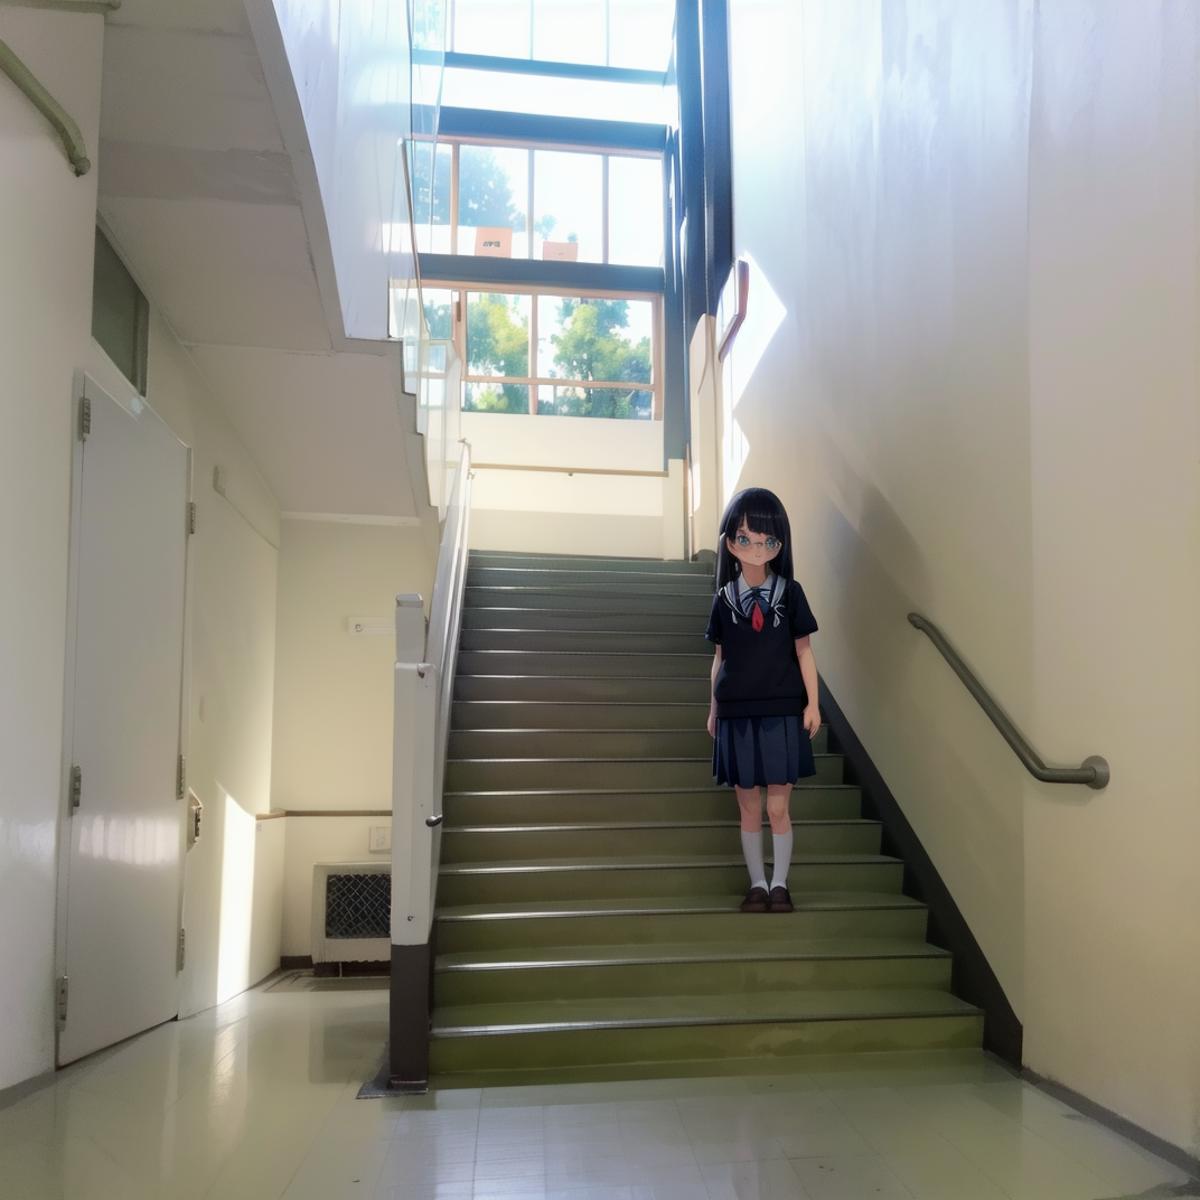 学校の階段 / Kaidan SD15 image by swingwings